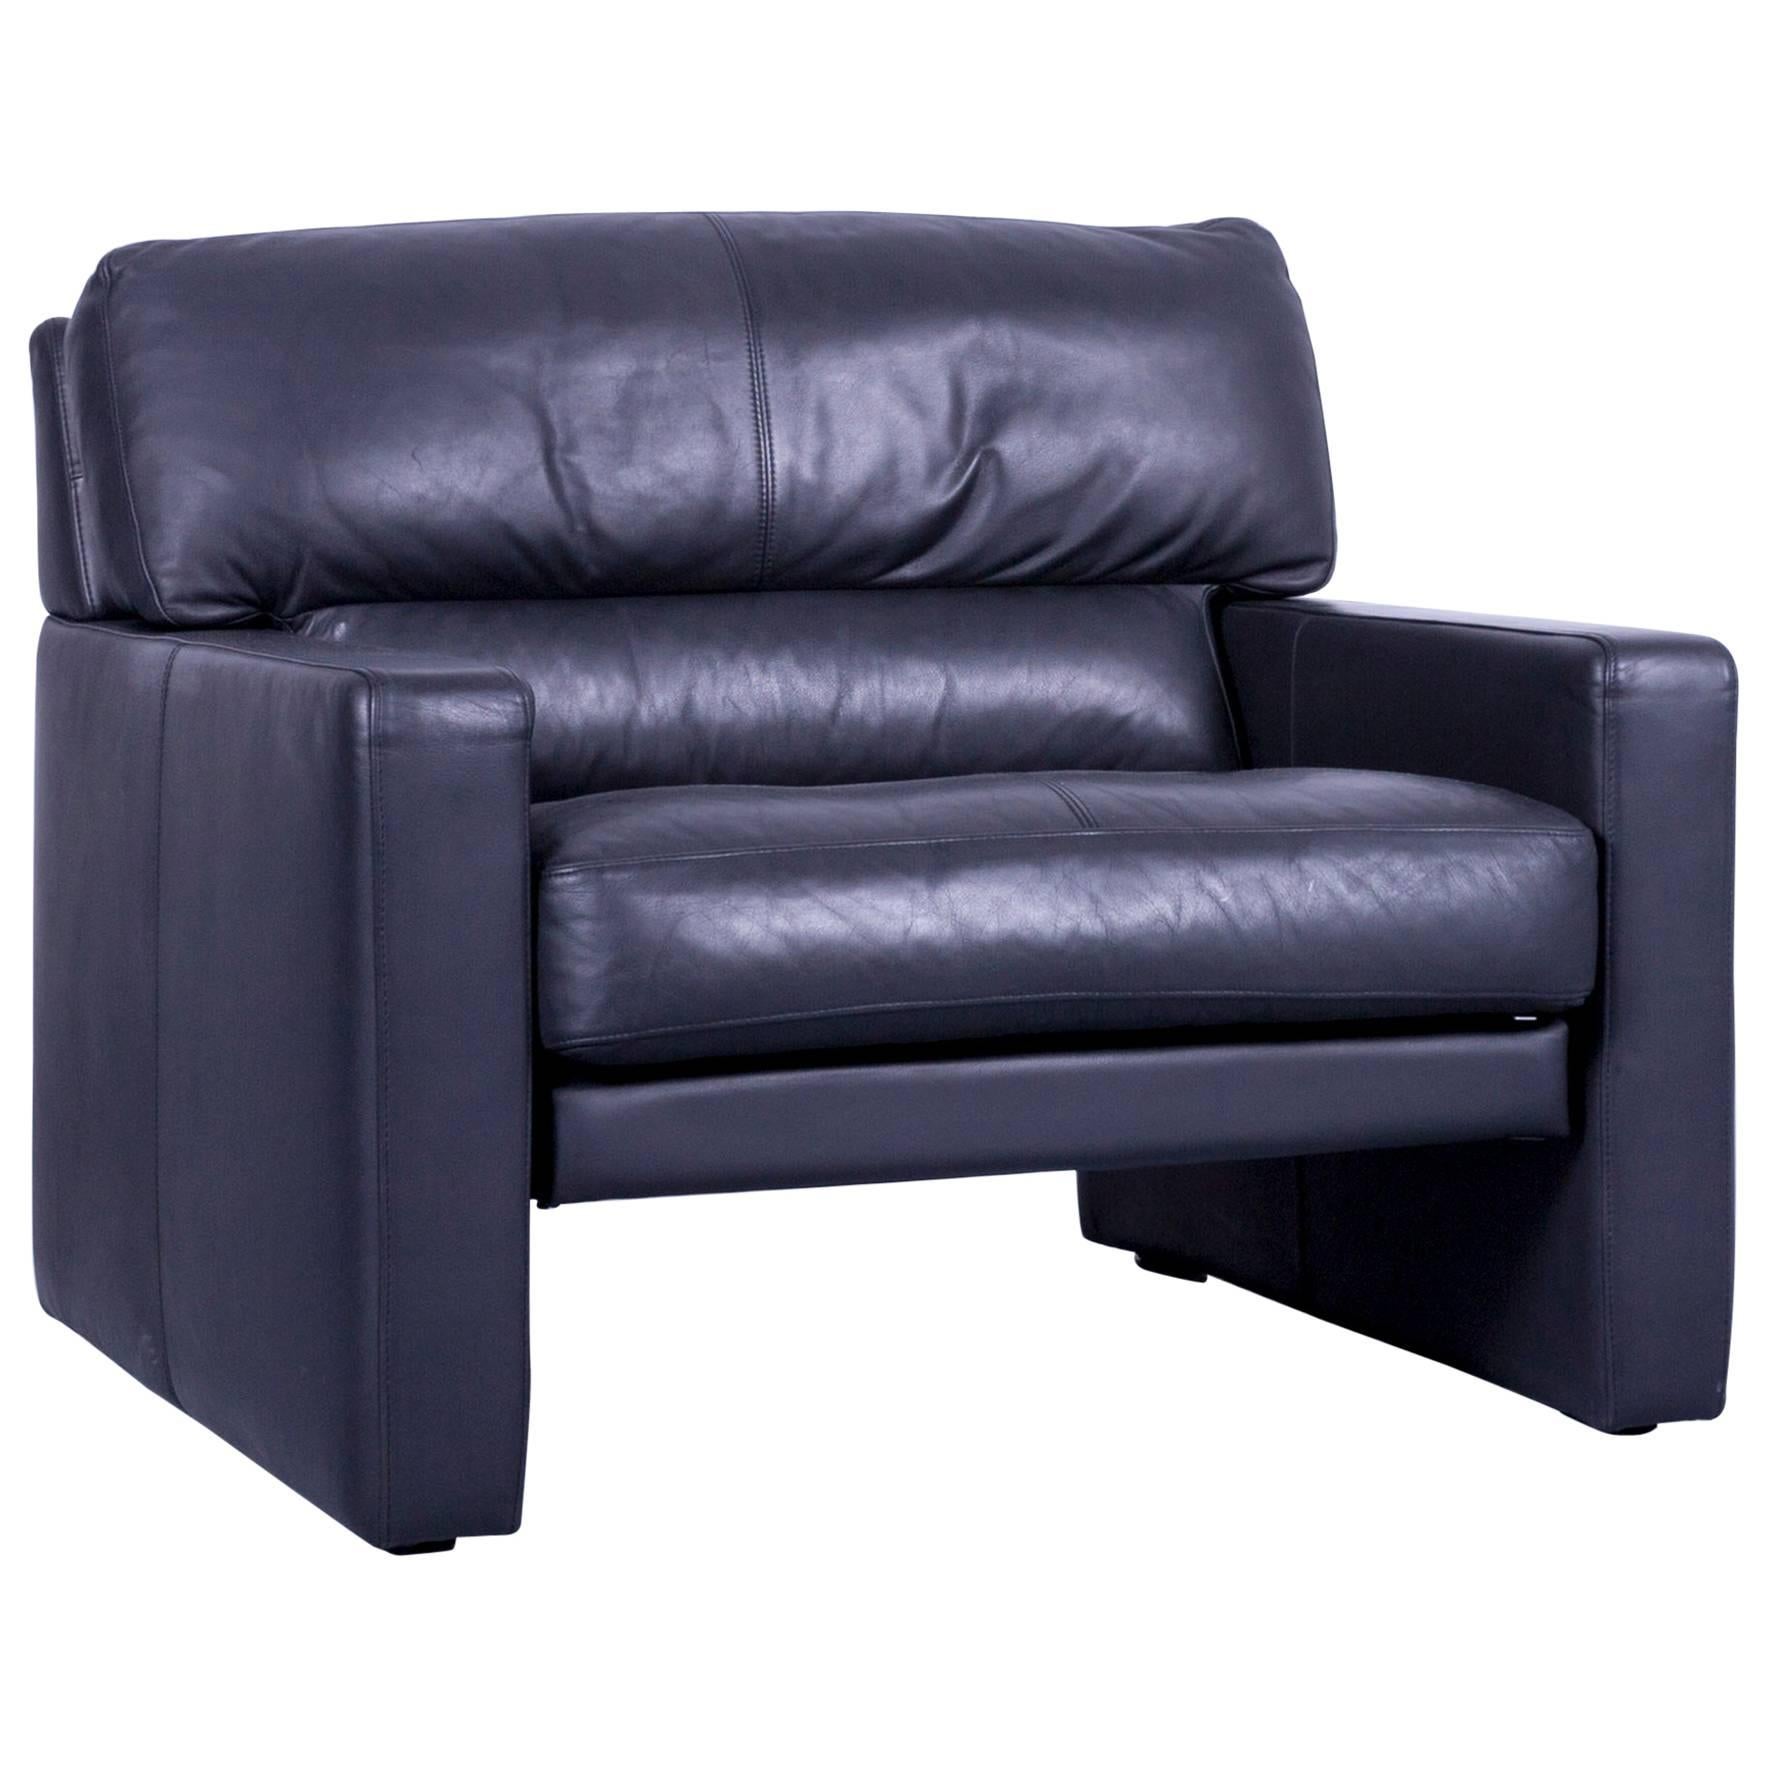 WK Wohnen Designer Armchair Leather Black Couch Modern